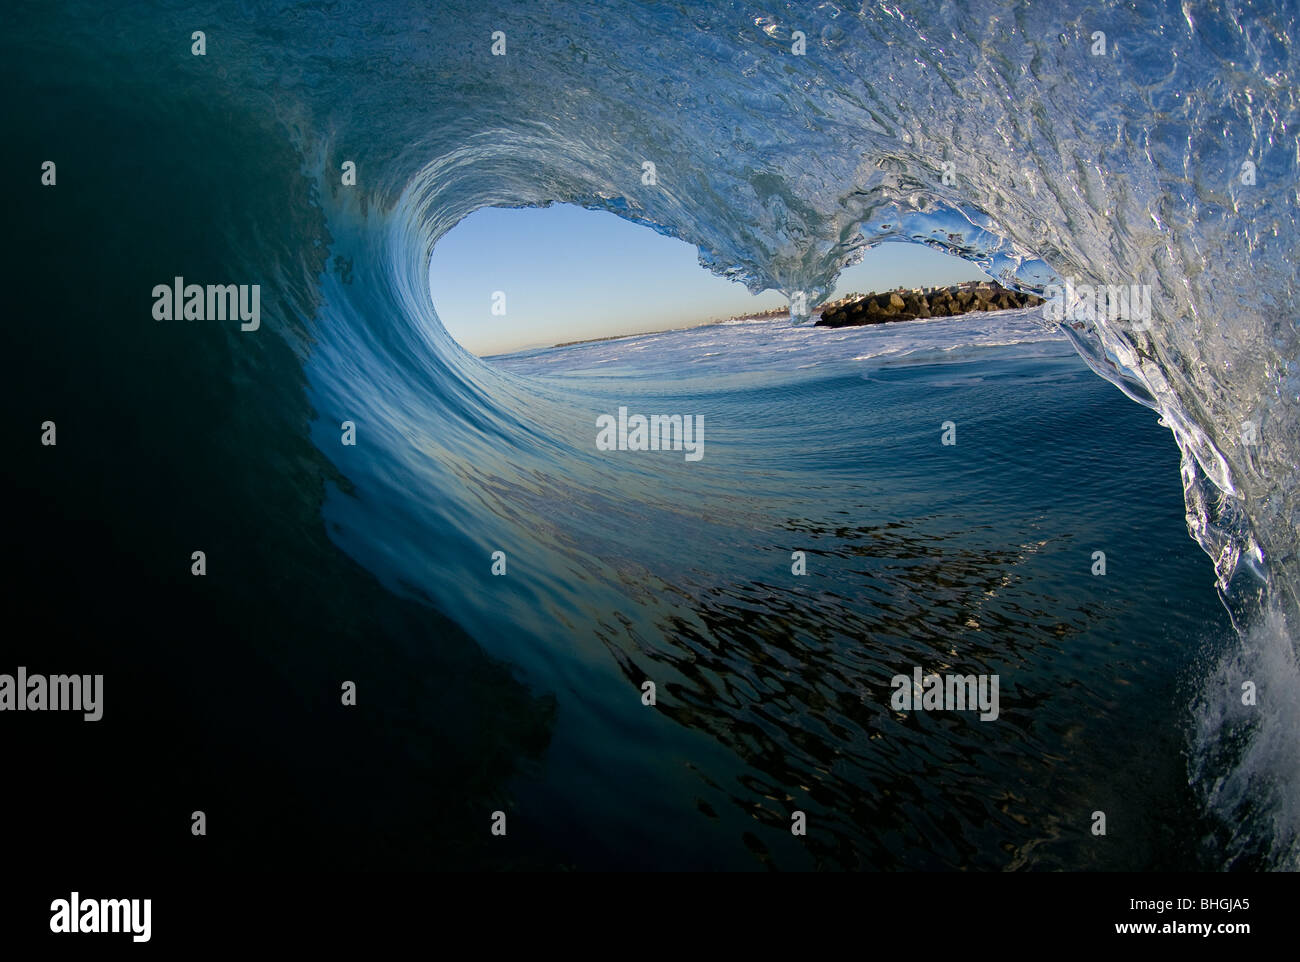 Dentro de una ola. Foto de stock